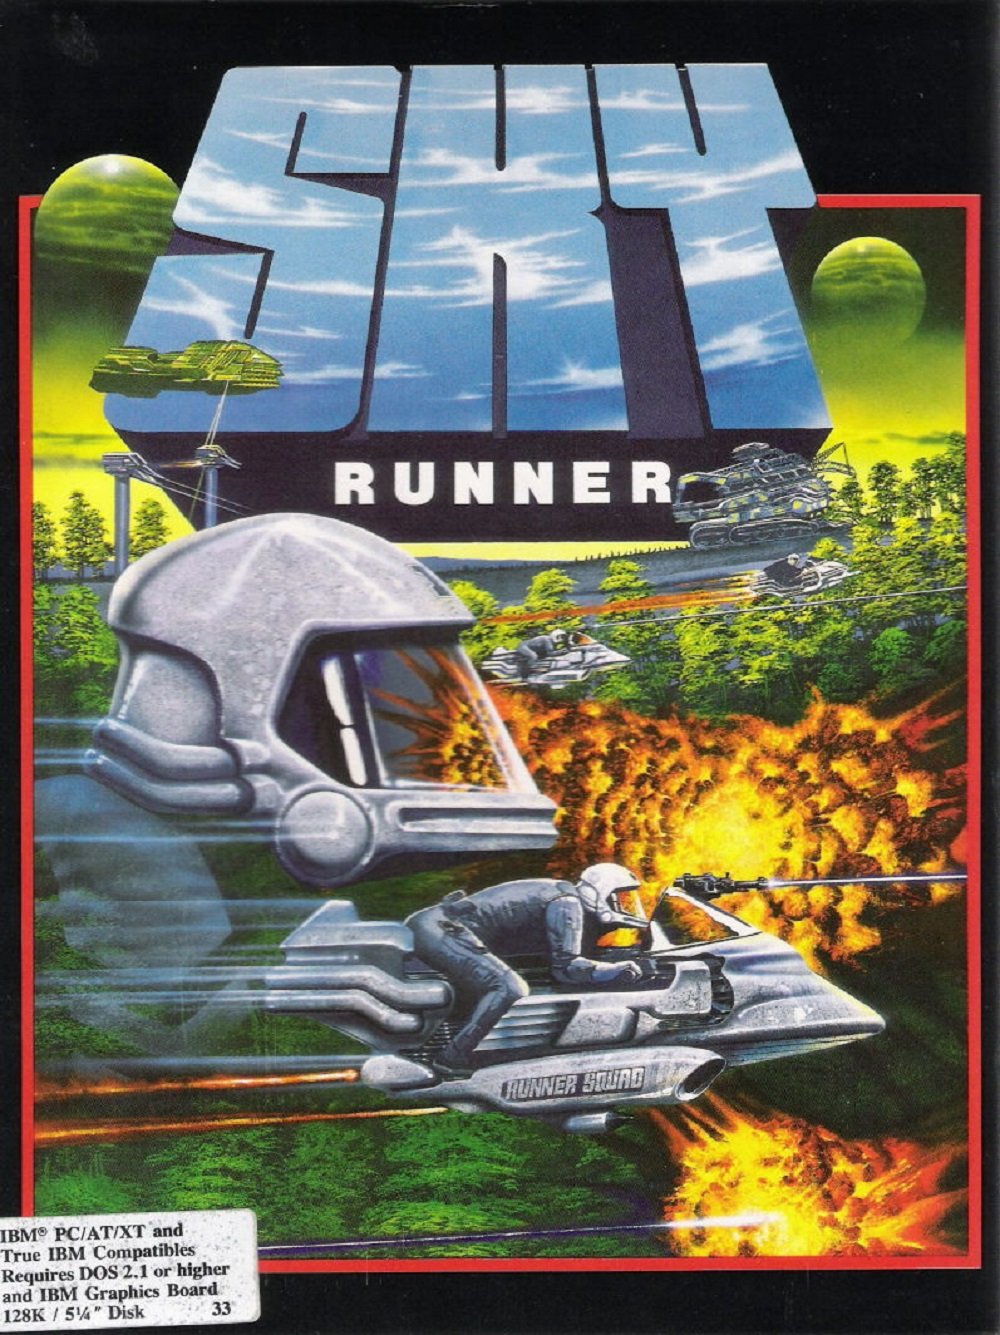 Image of Sky Runner